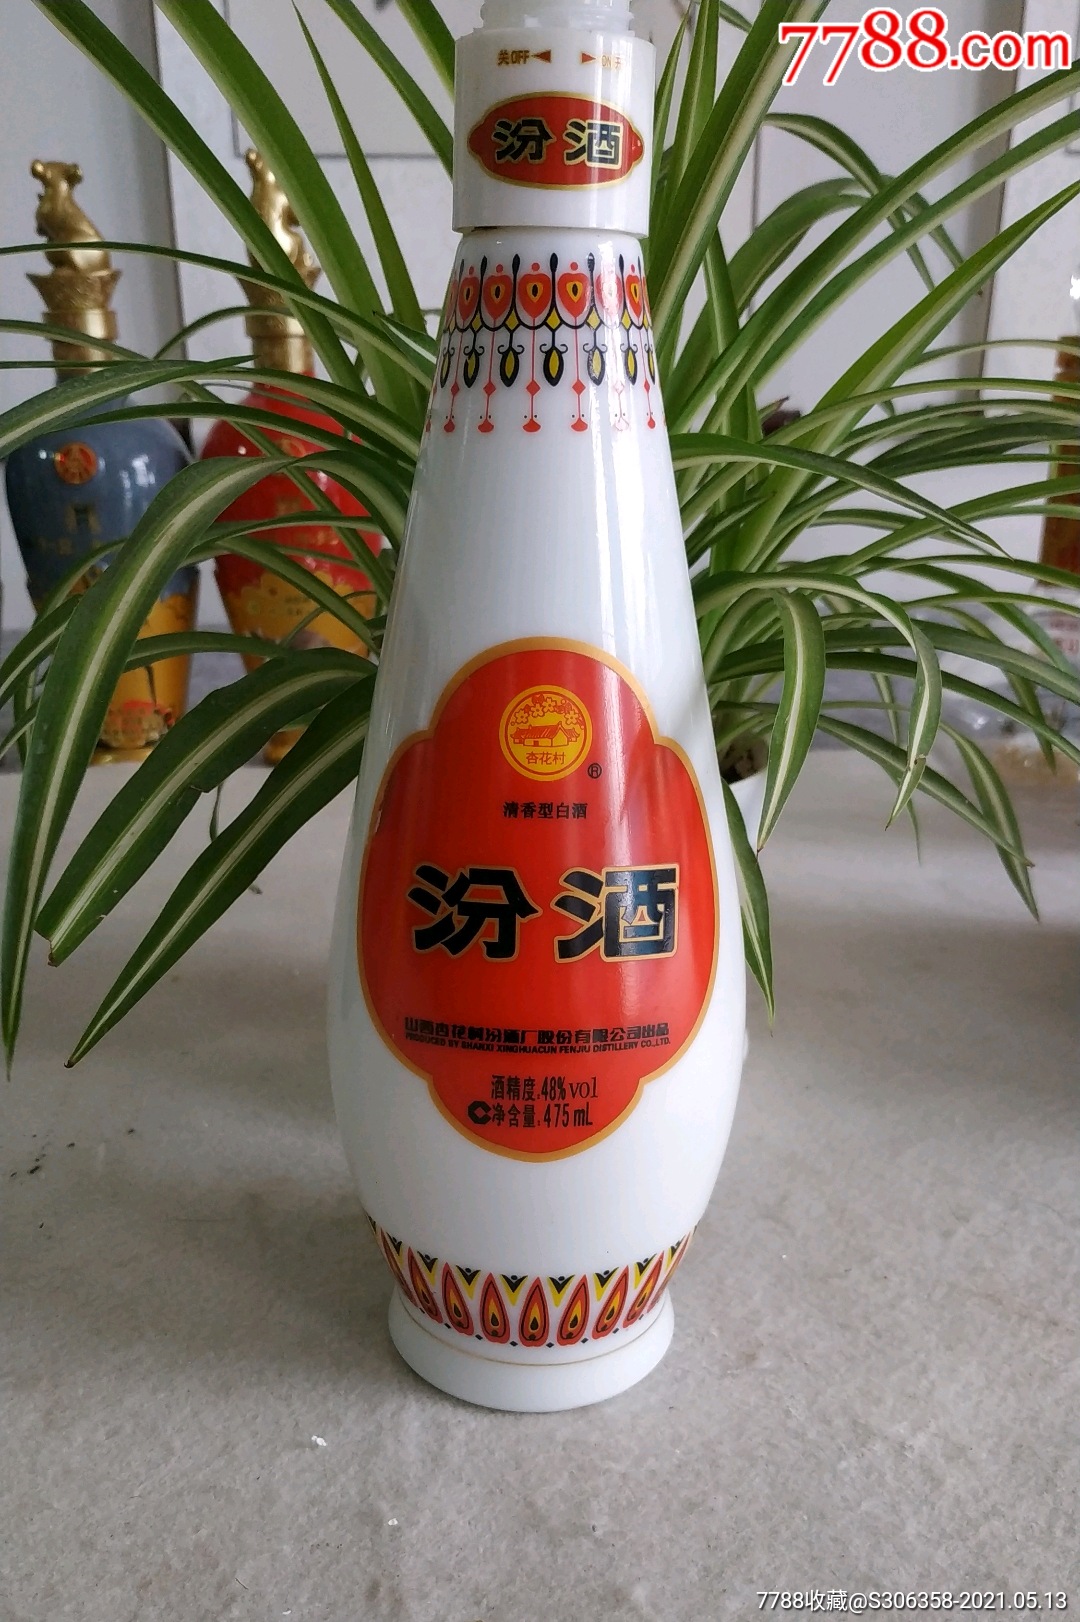 乳玻璃瓶瓶汾酒-价格:5元-se80155371-酒瓶-零售-7788收藏__收藏热线